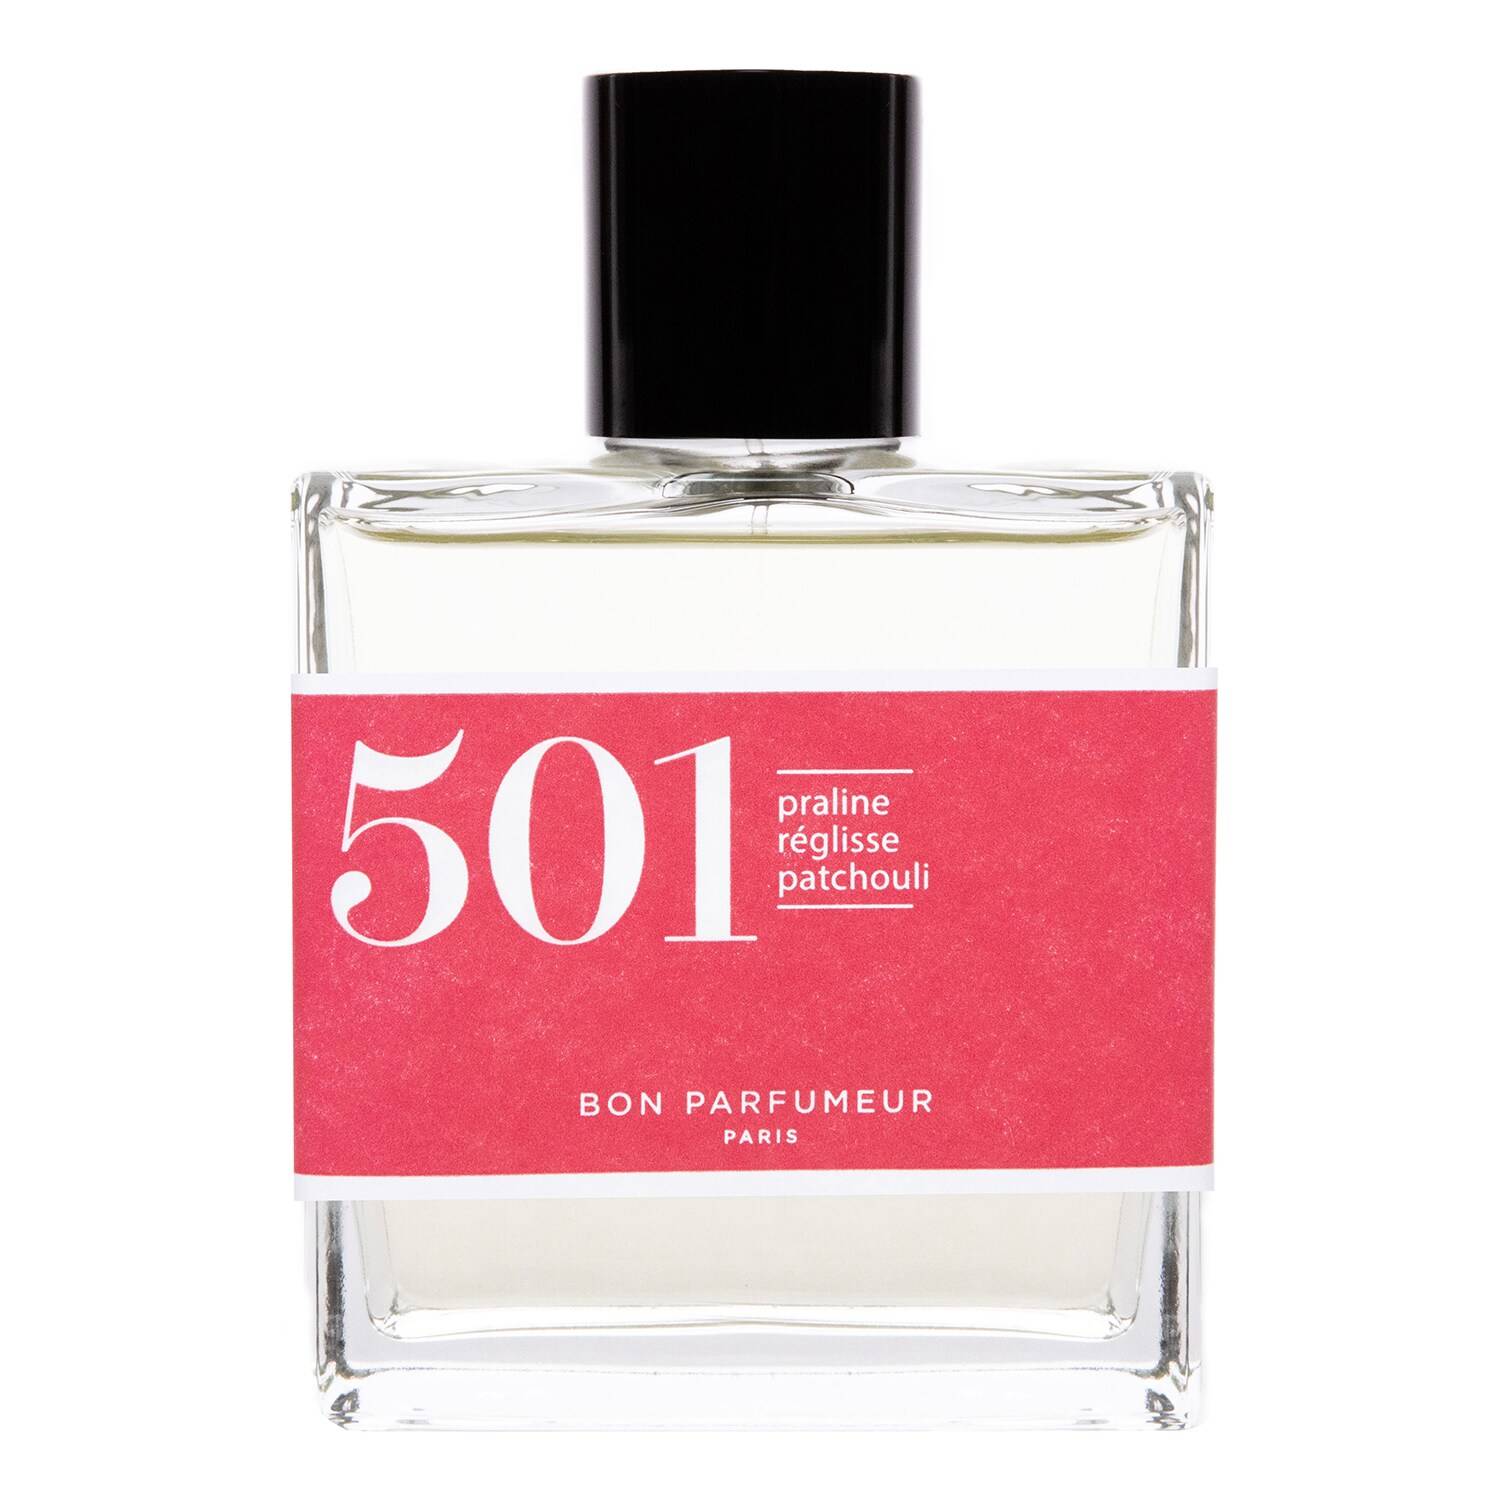 Bon Parfumeur 501 Praline Licorice Patchouli Eau De Cologne 100Ml